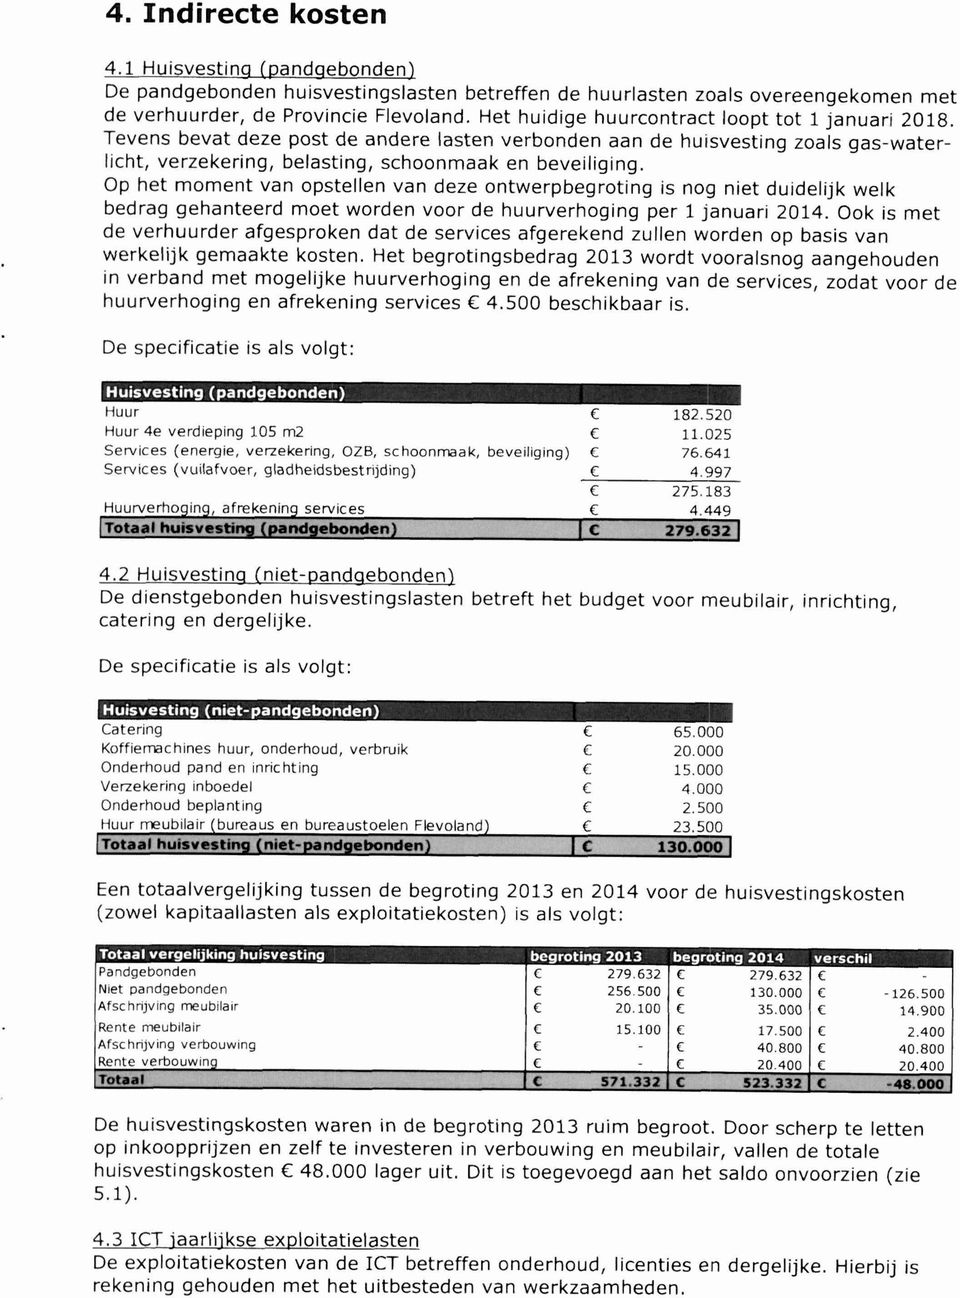 Op het moment van opstellen van deze ontwerpbegroting is nog niet duidelijk welk bedrag gehanteerd moet worden voor de huurverhoging per 1 januari 2014.